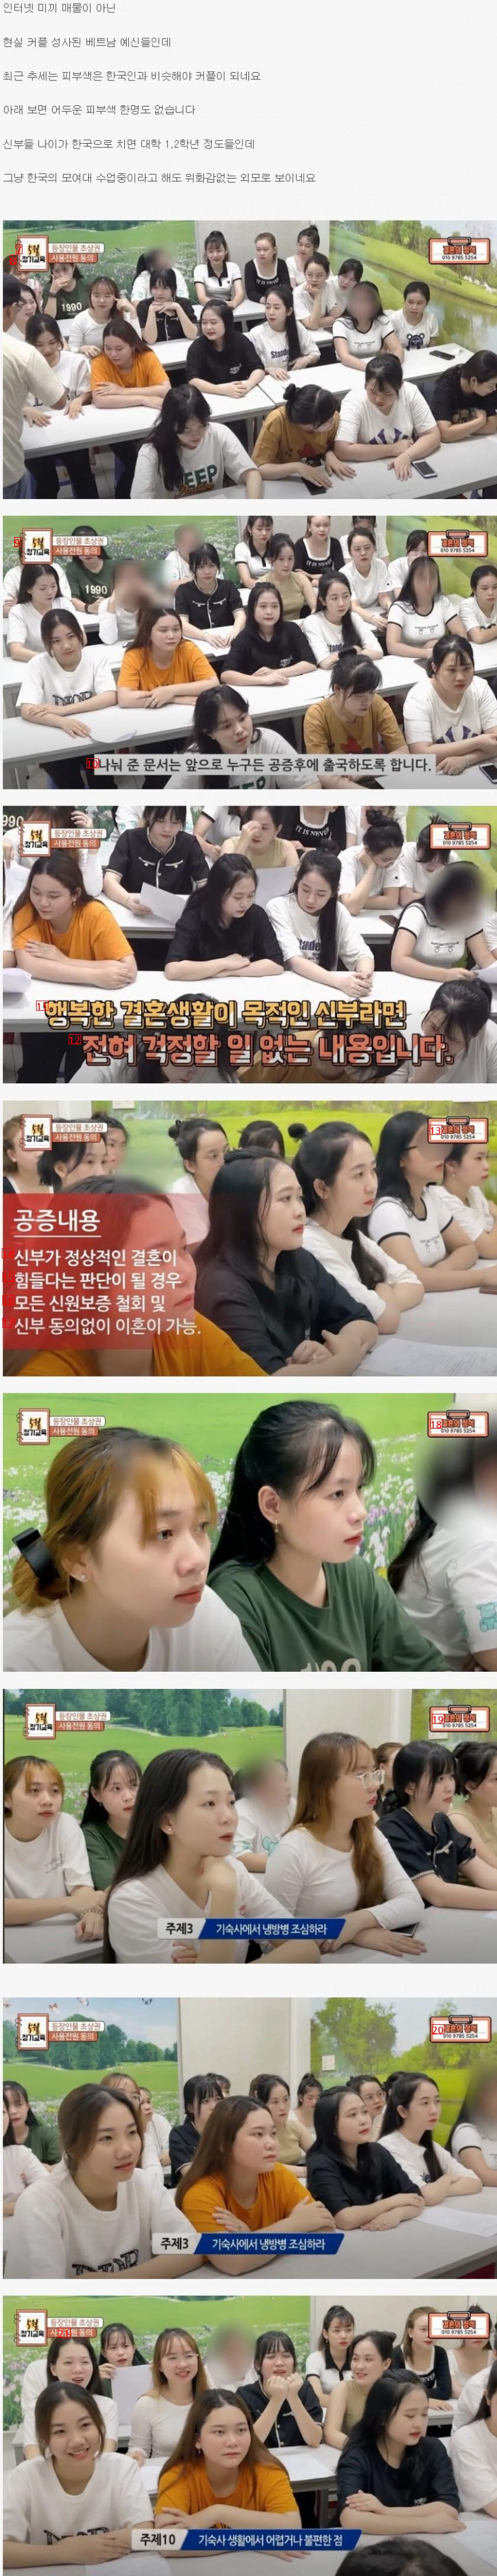 韓国に嫁ぐベトナム人花嫁の実際の外見